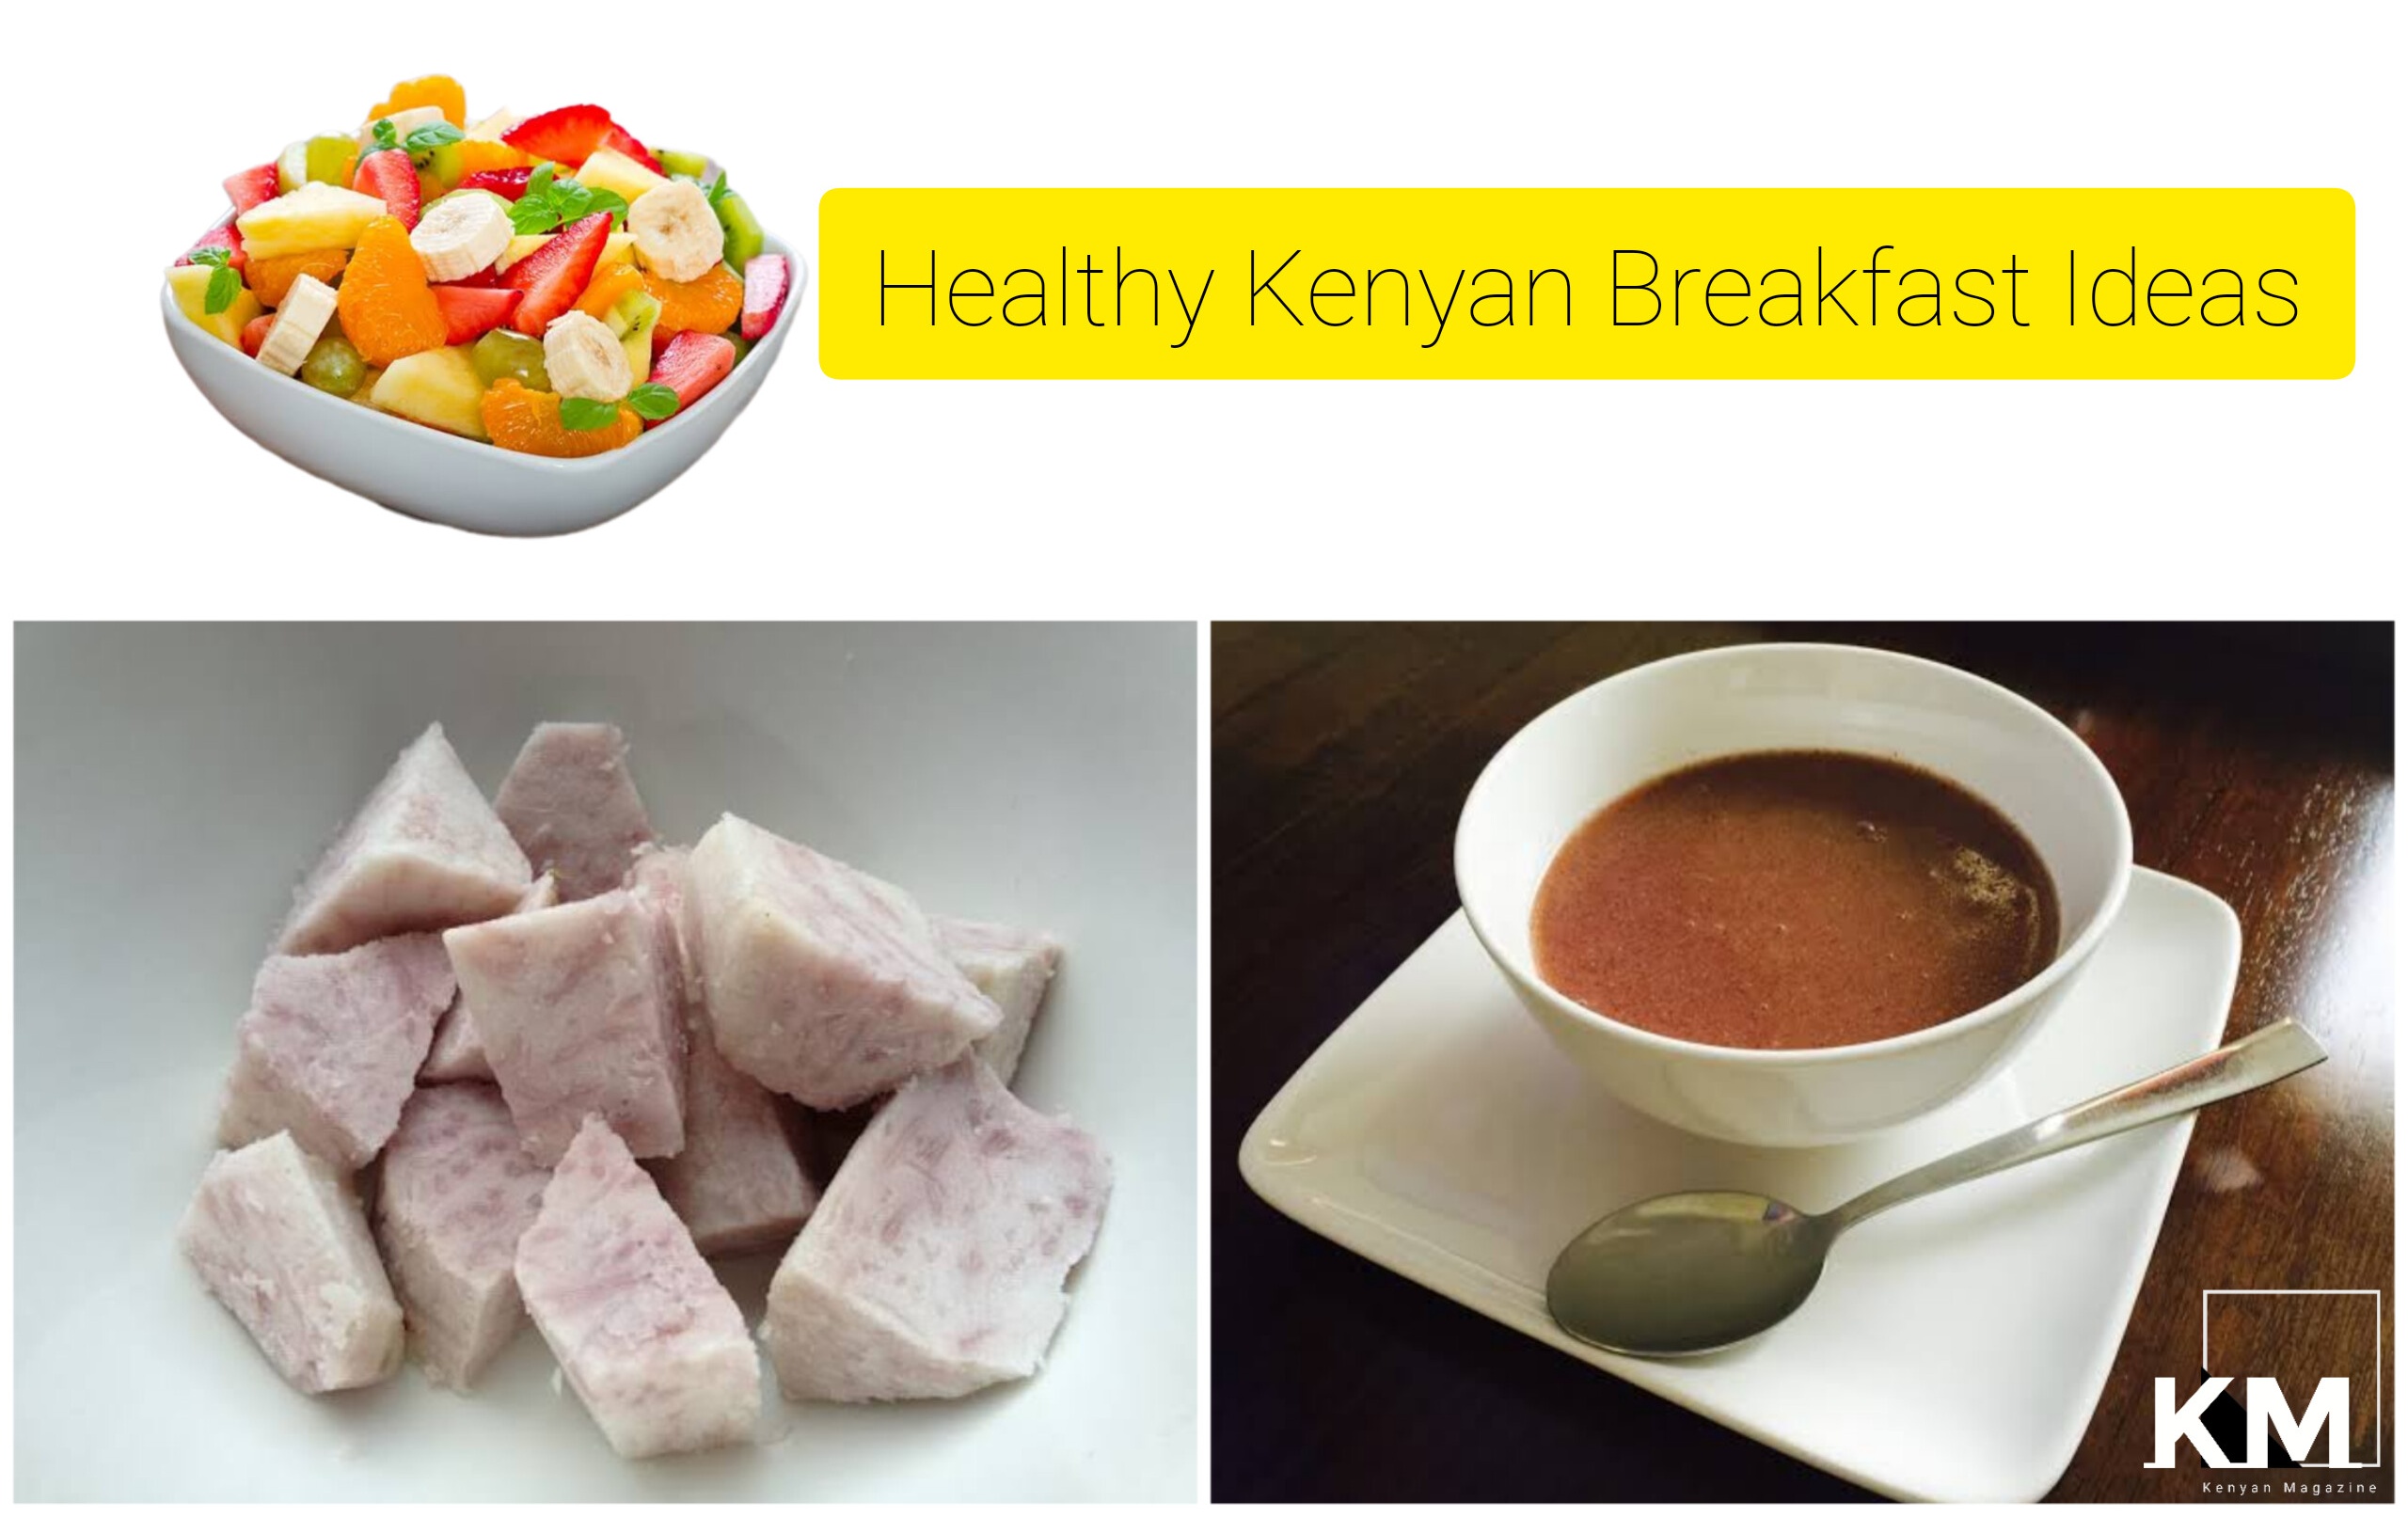 Breakfast ideas in Kenya